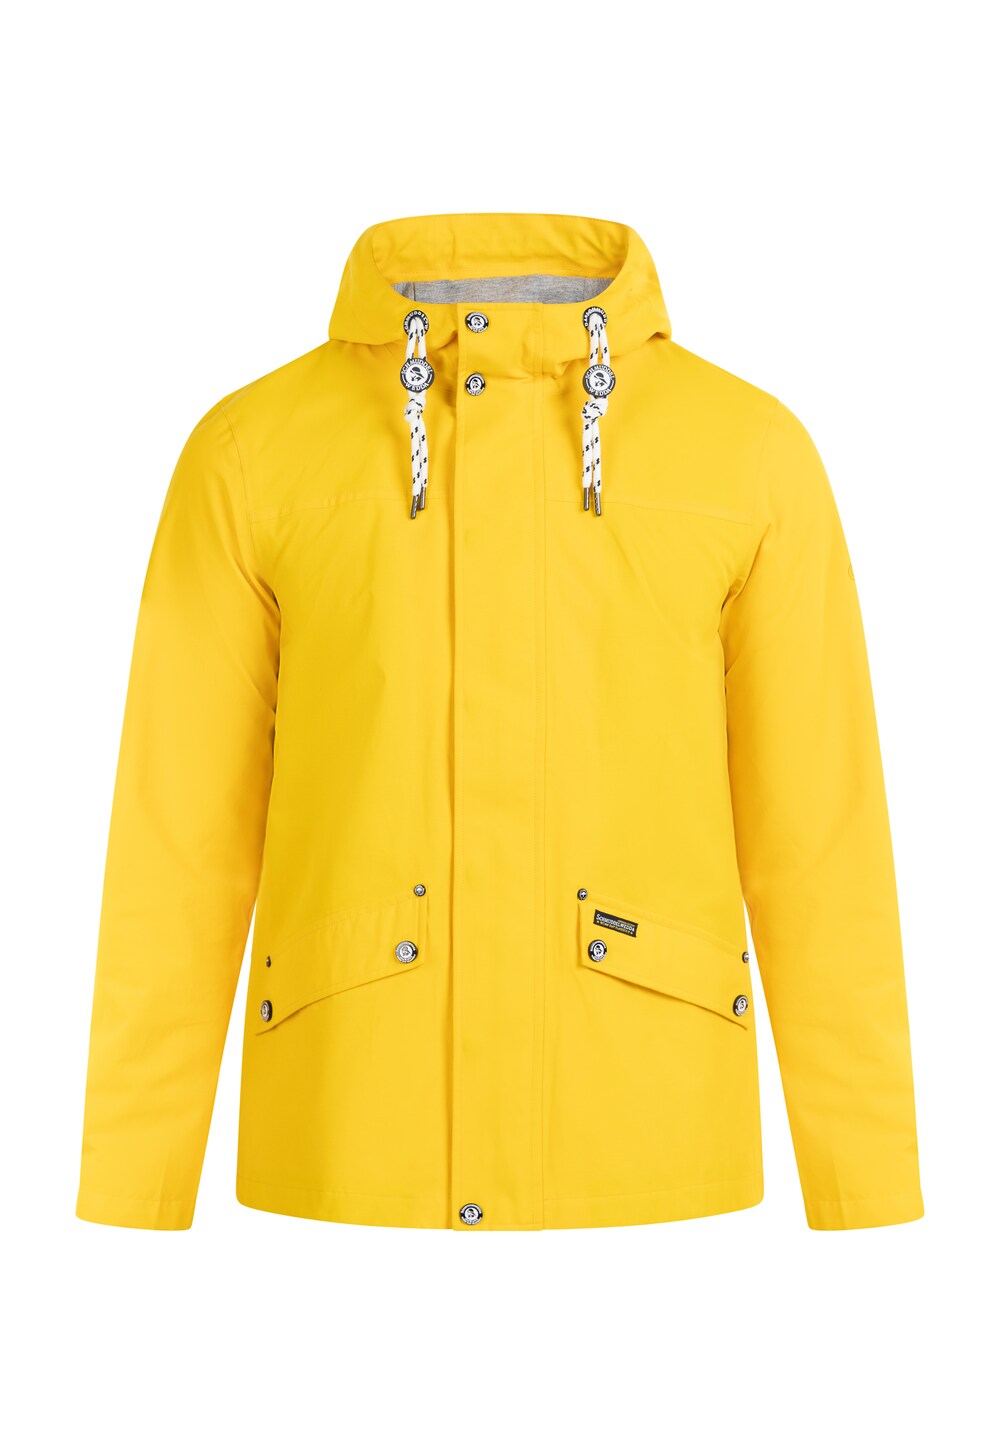 Спортивная куртка Schmuddelwedda, желтый/лимонно-желтый